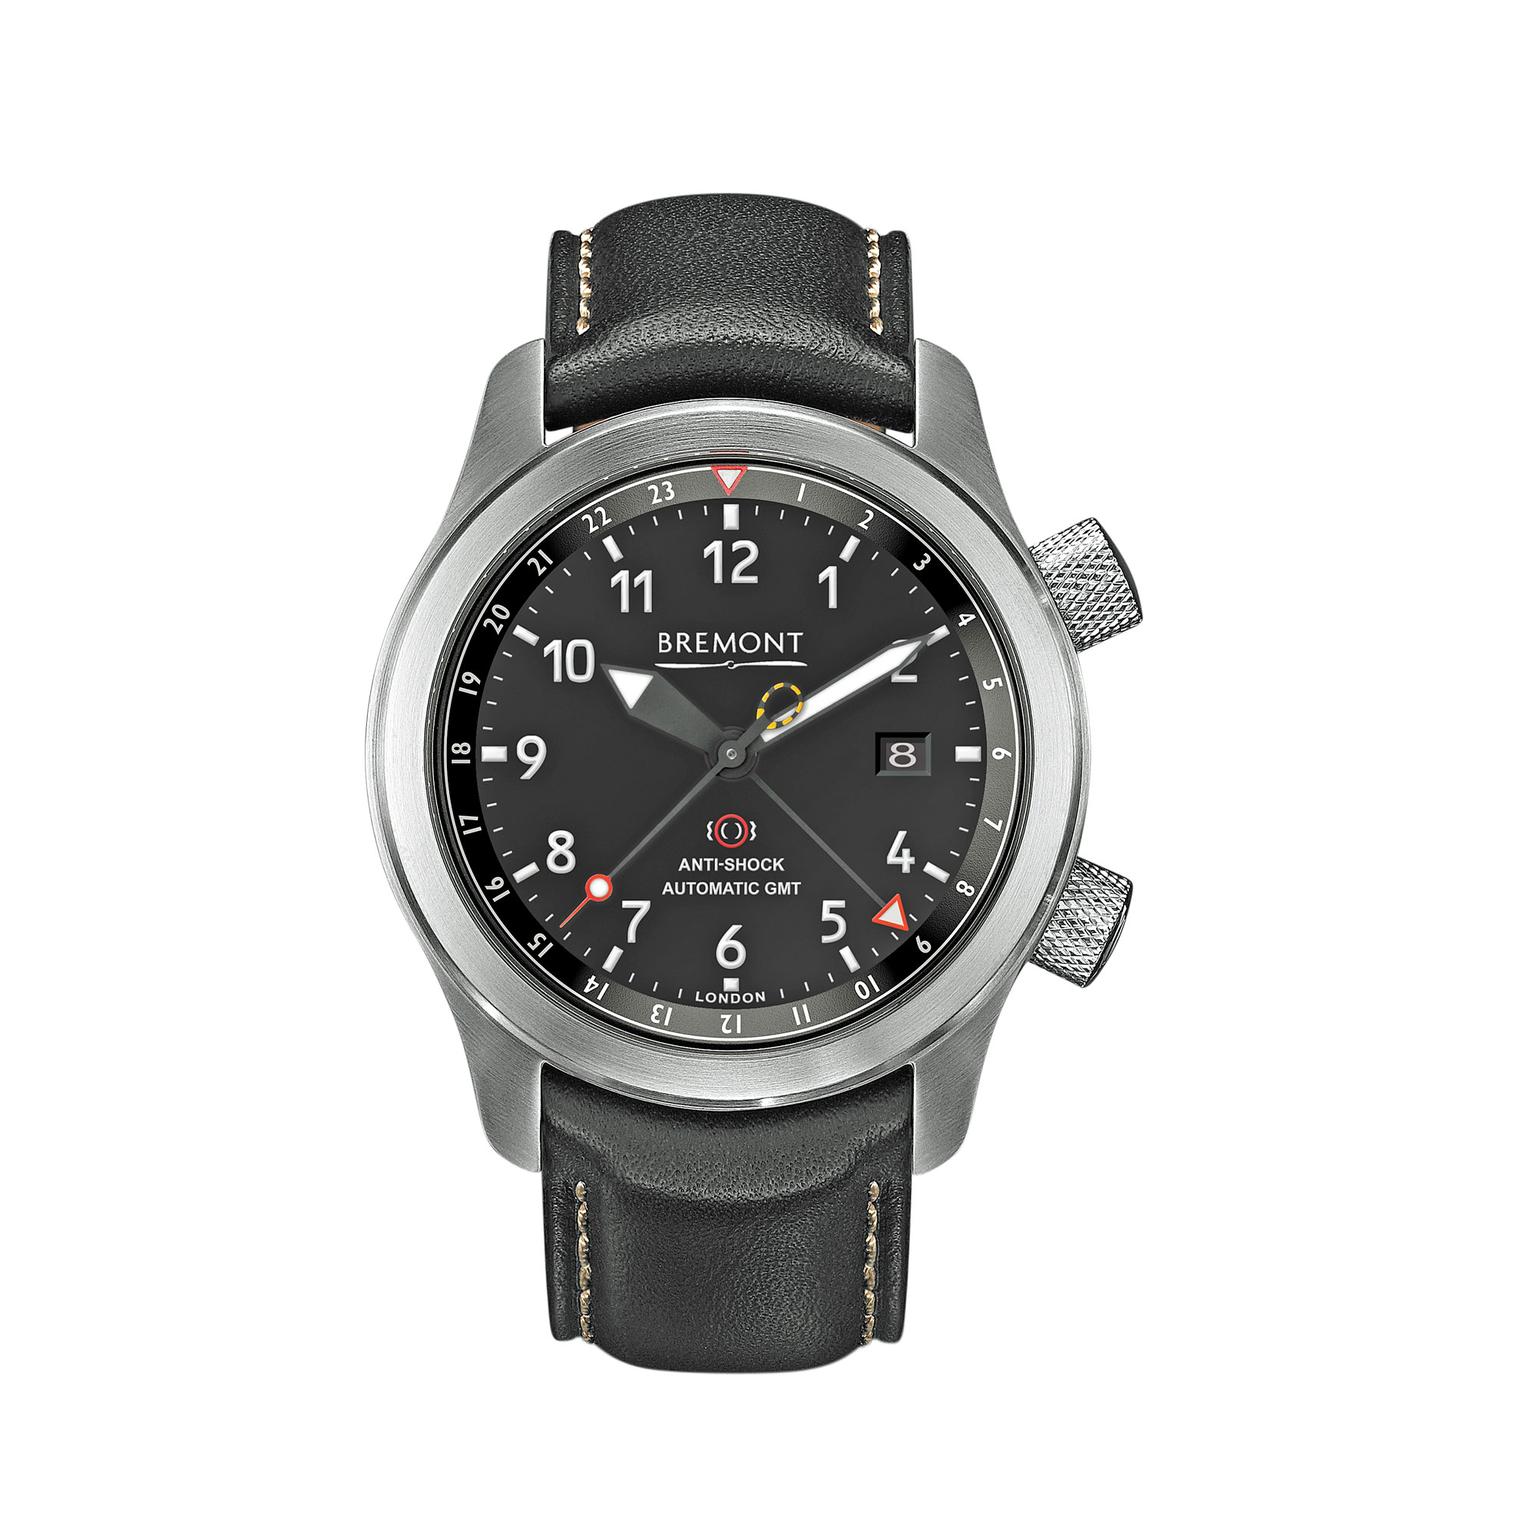 Bremont MBIII GMT watch